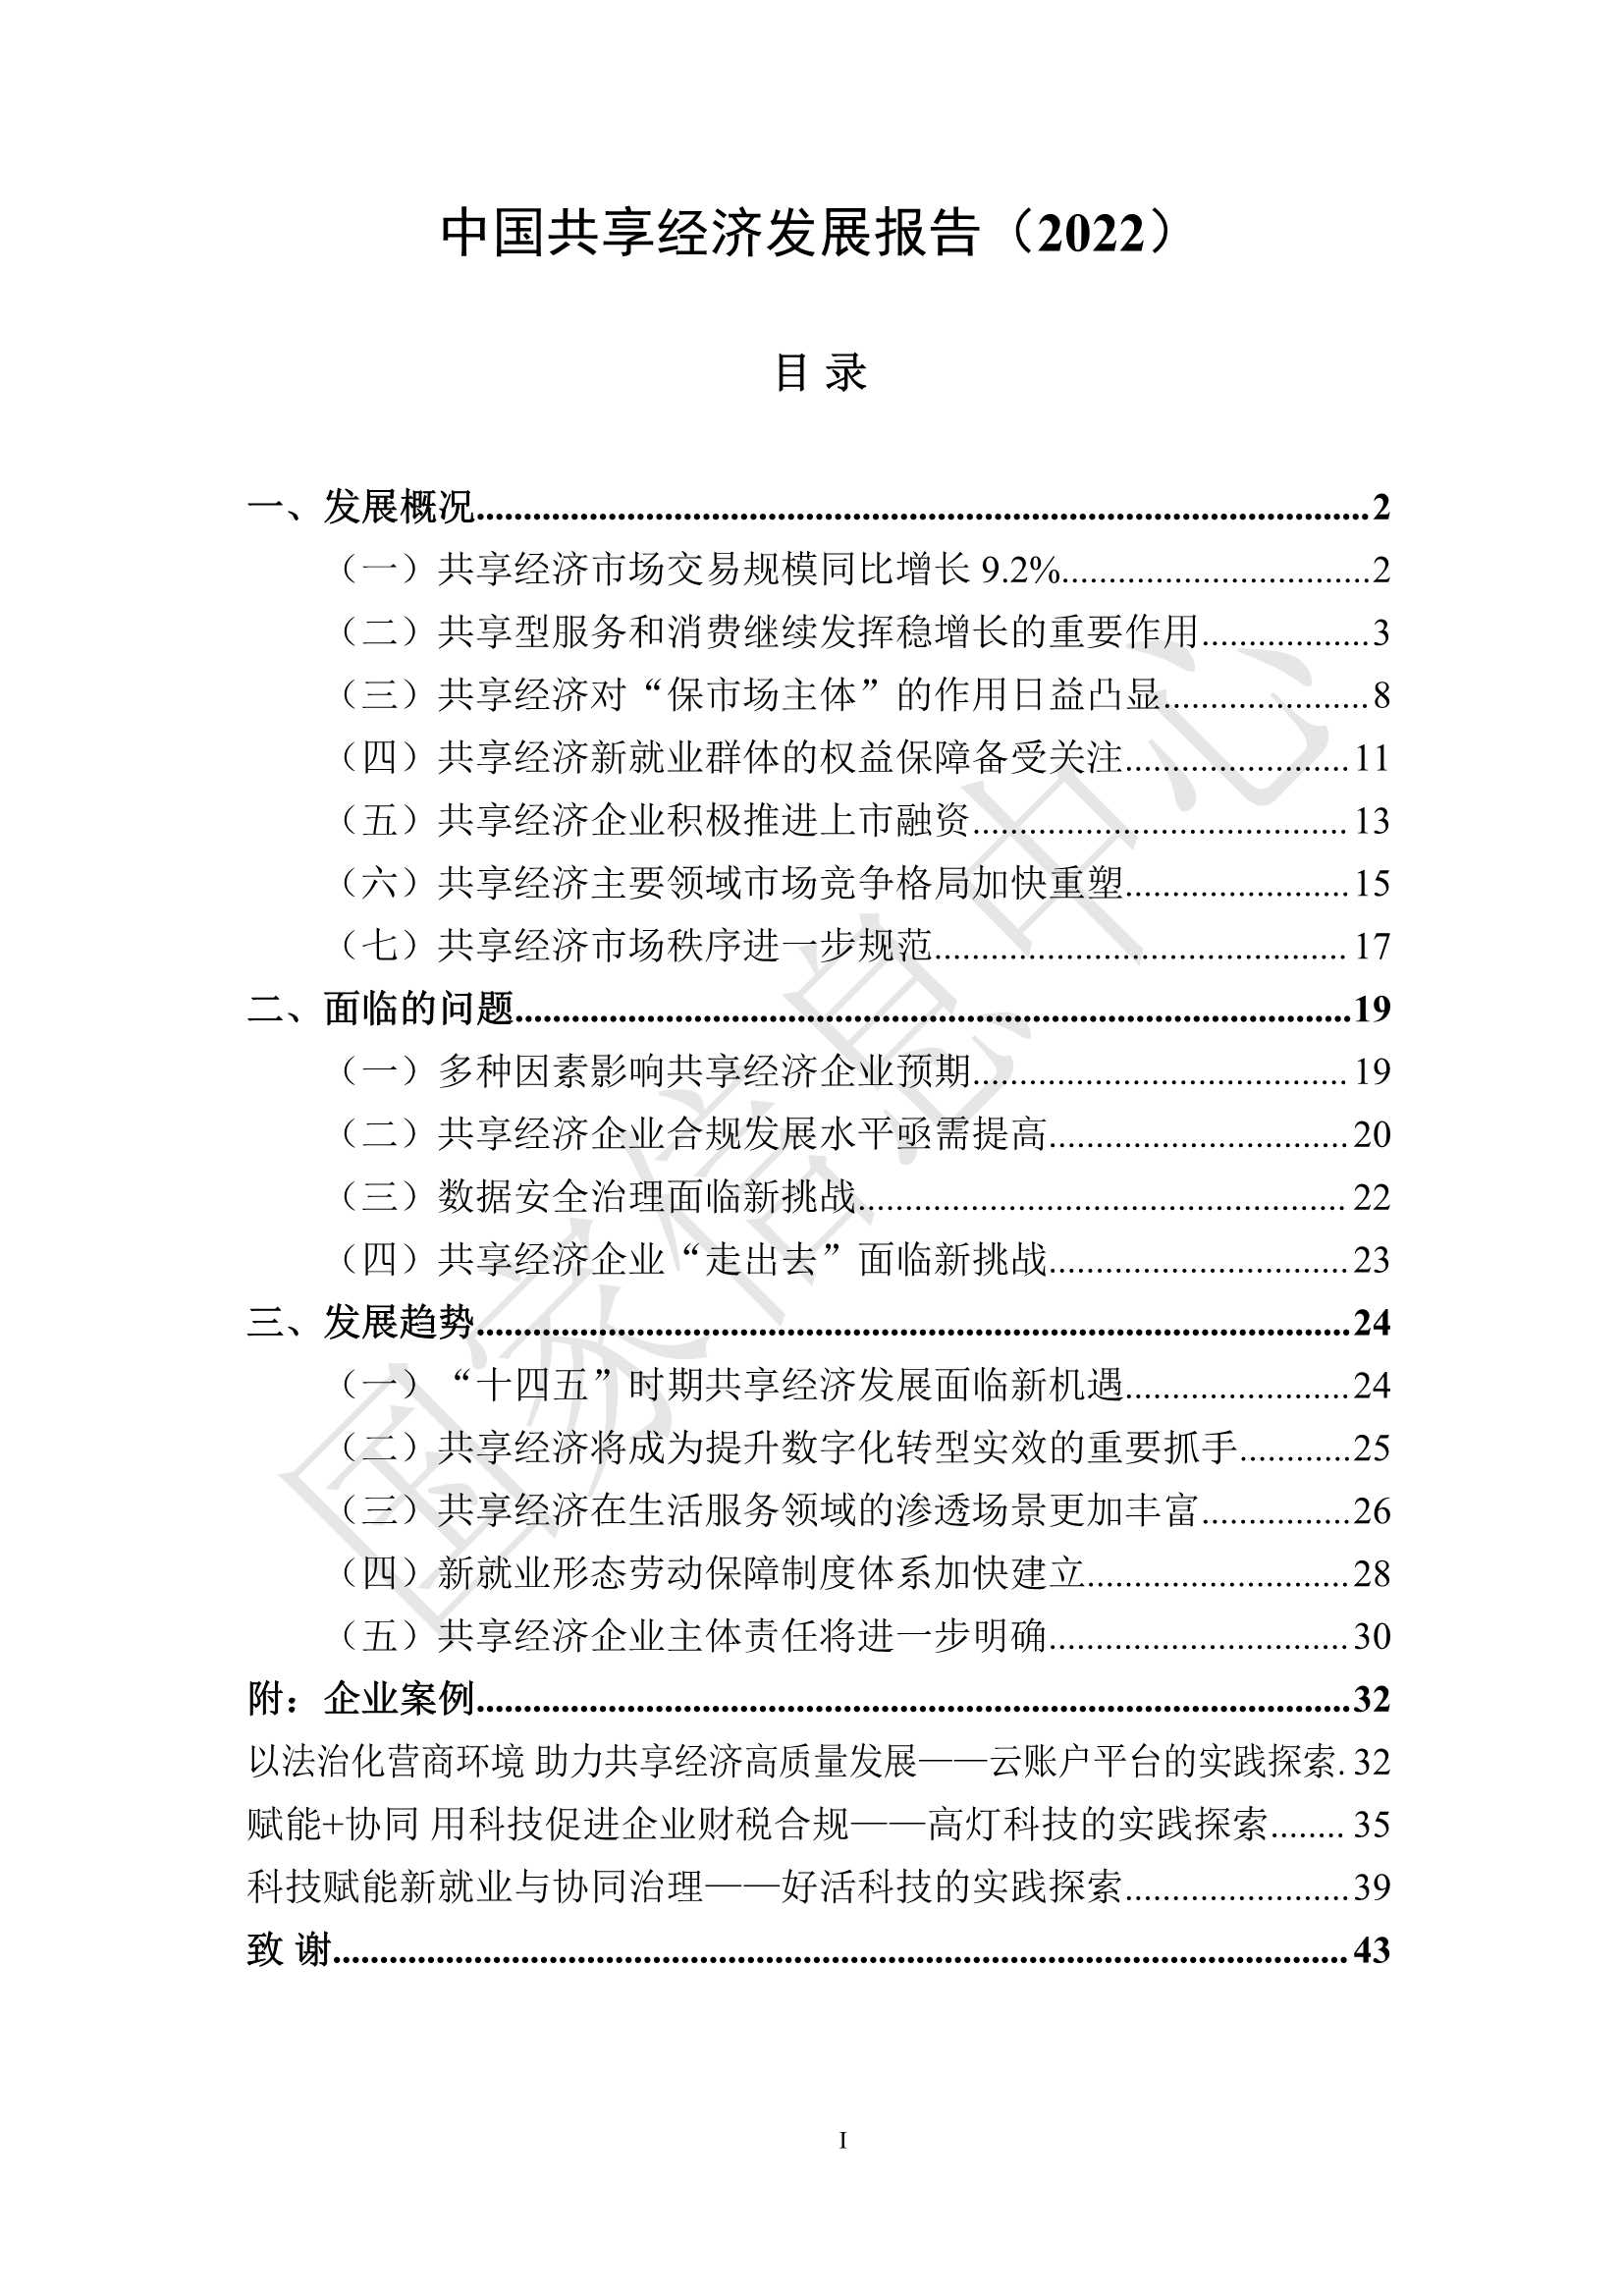 国家信息中心-2022年中国共享经济发展报告-2022.03-45页